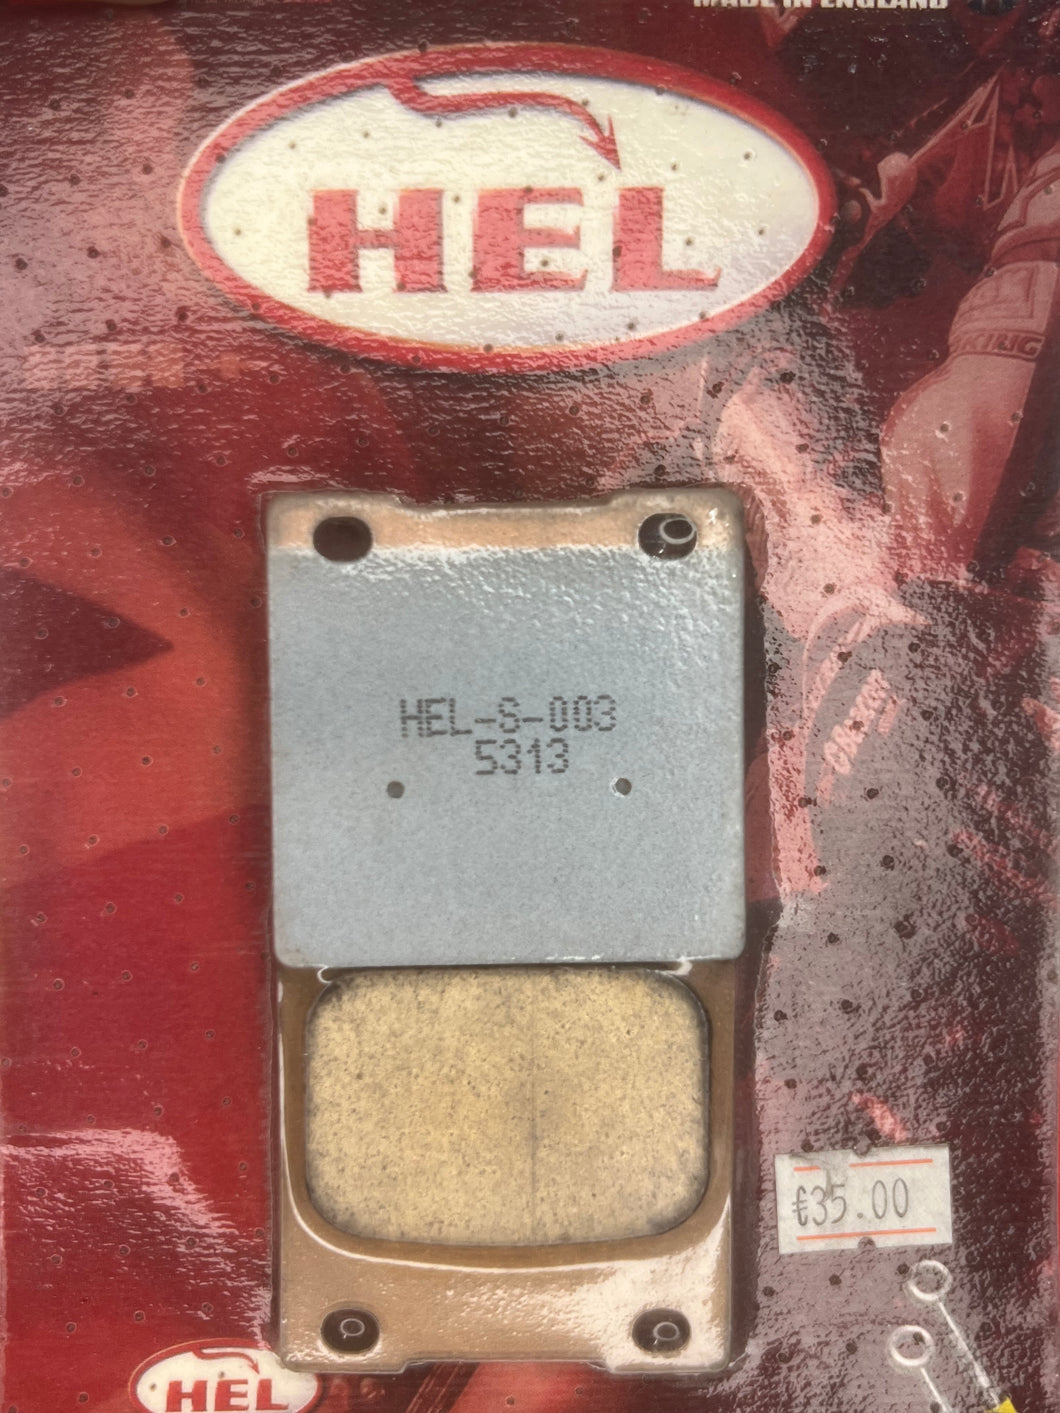 HEL-S-003 (Rear)